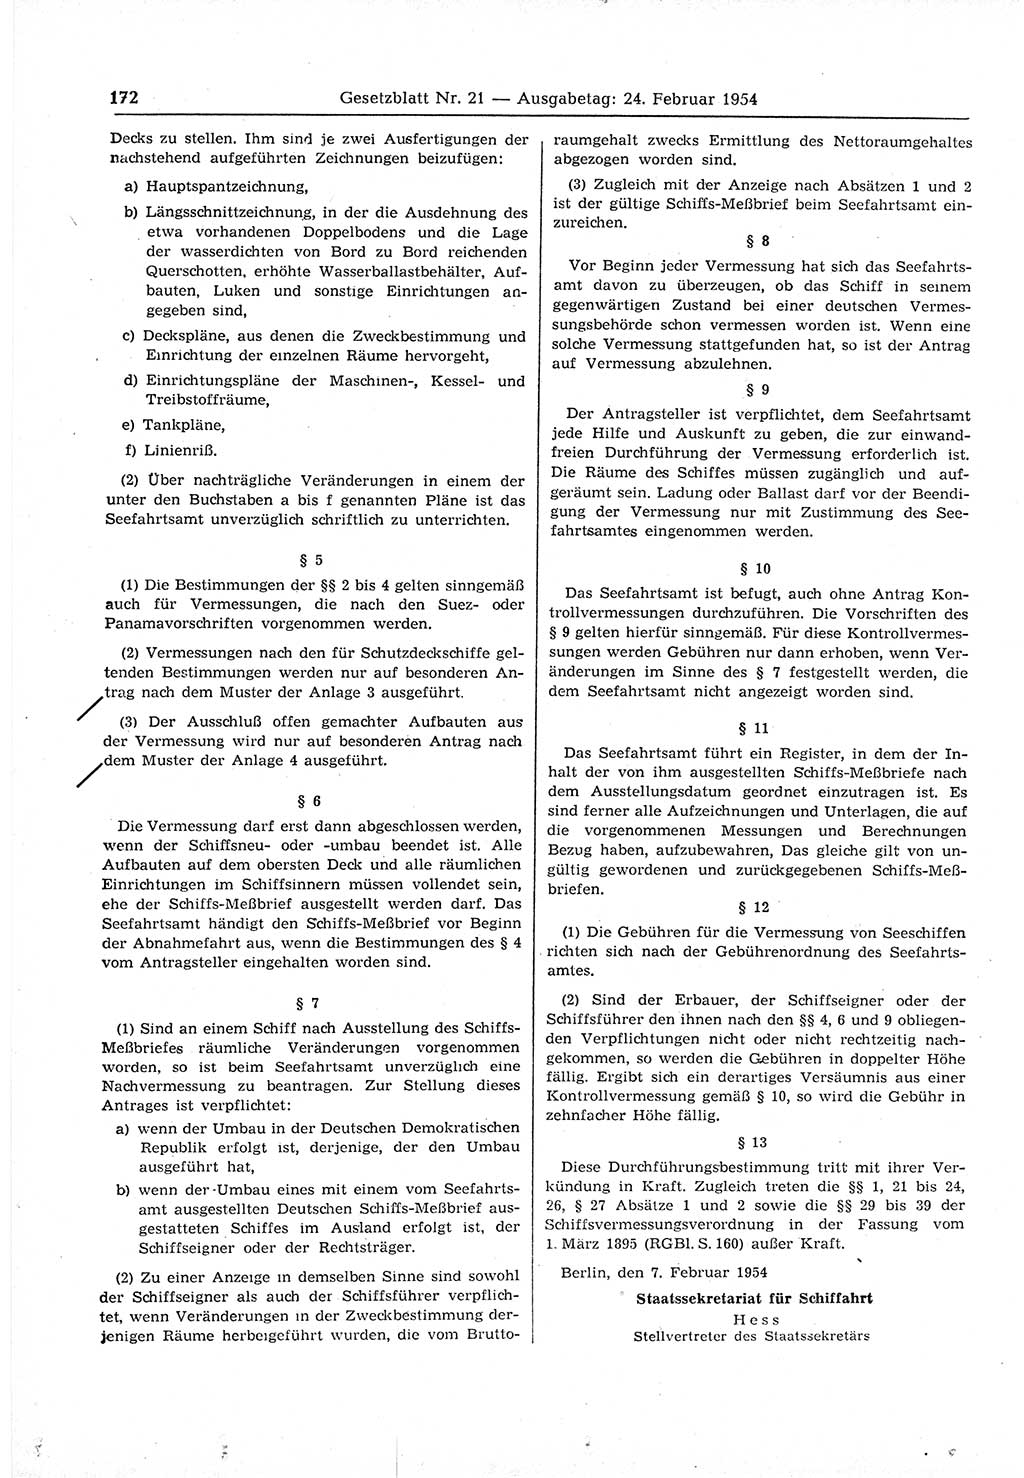 Gesetzblatt (GBl.) der Deutschen Demokratischen Republik (DDR) 1954, Seite 172 (GBl. DDR 1954, S. 172)